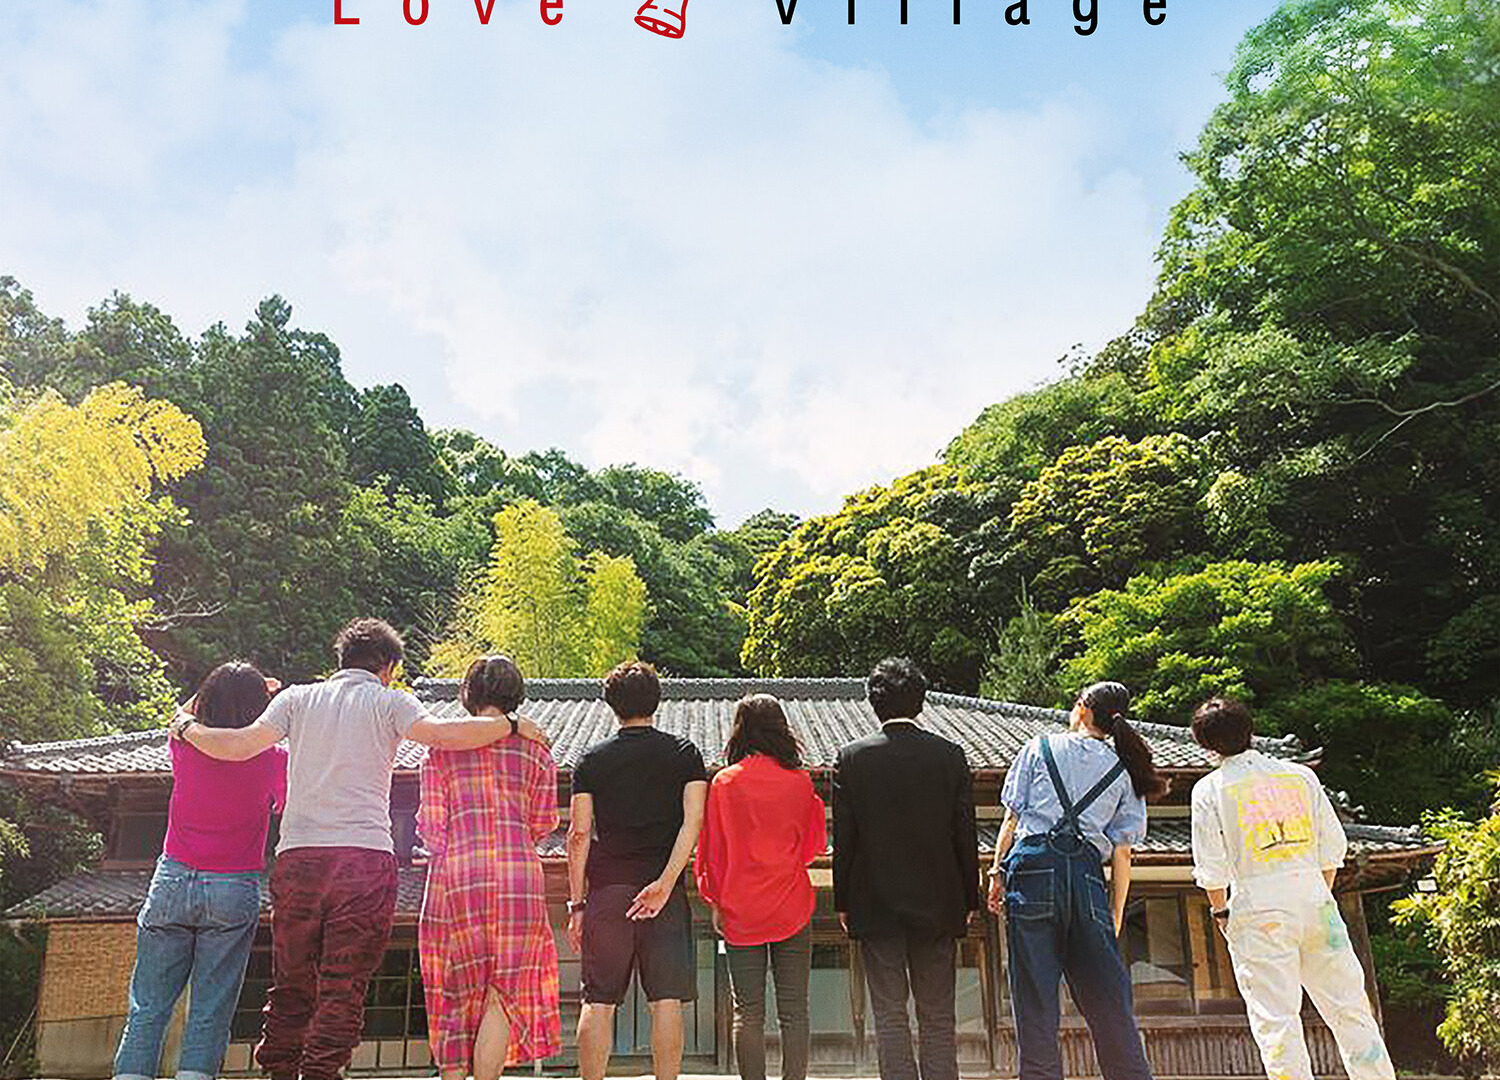 Show Love Village